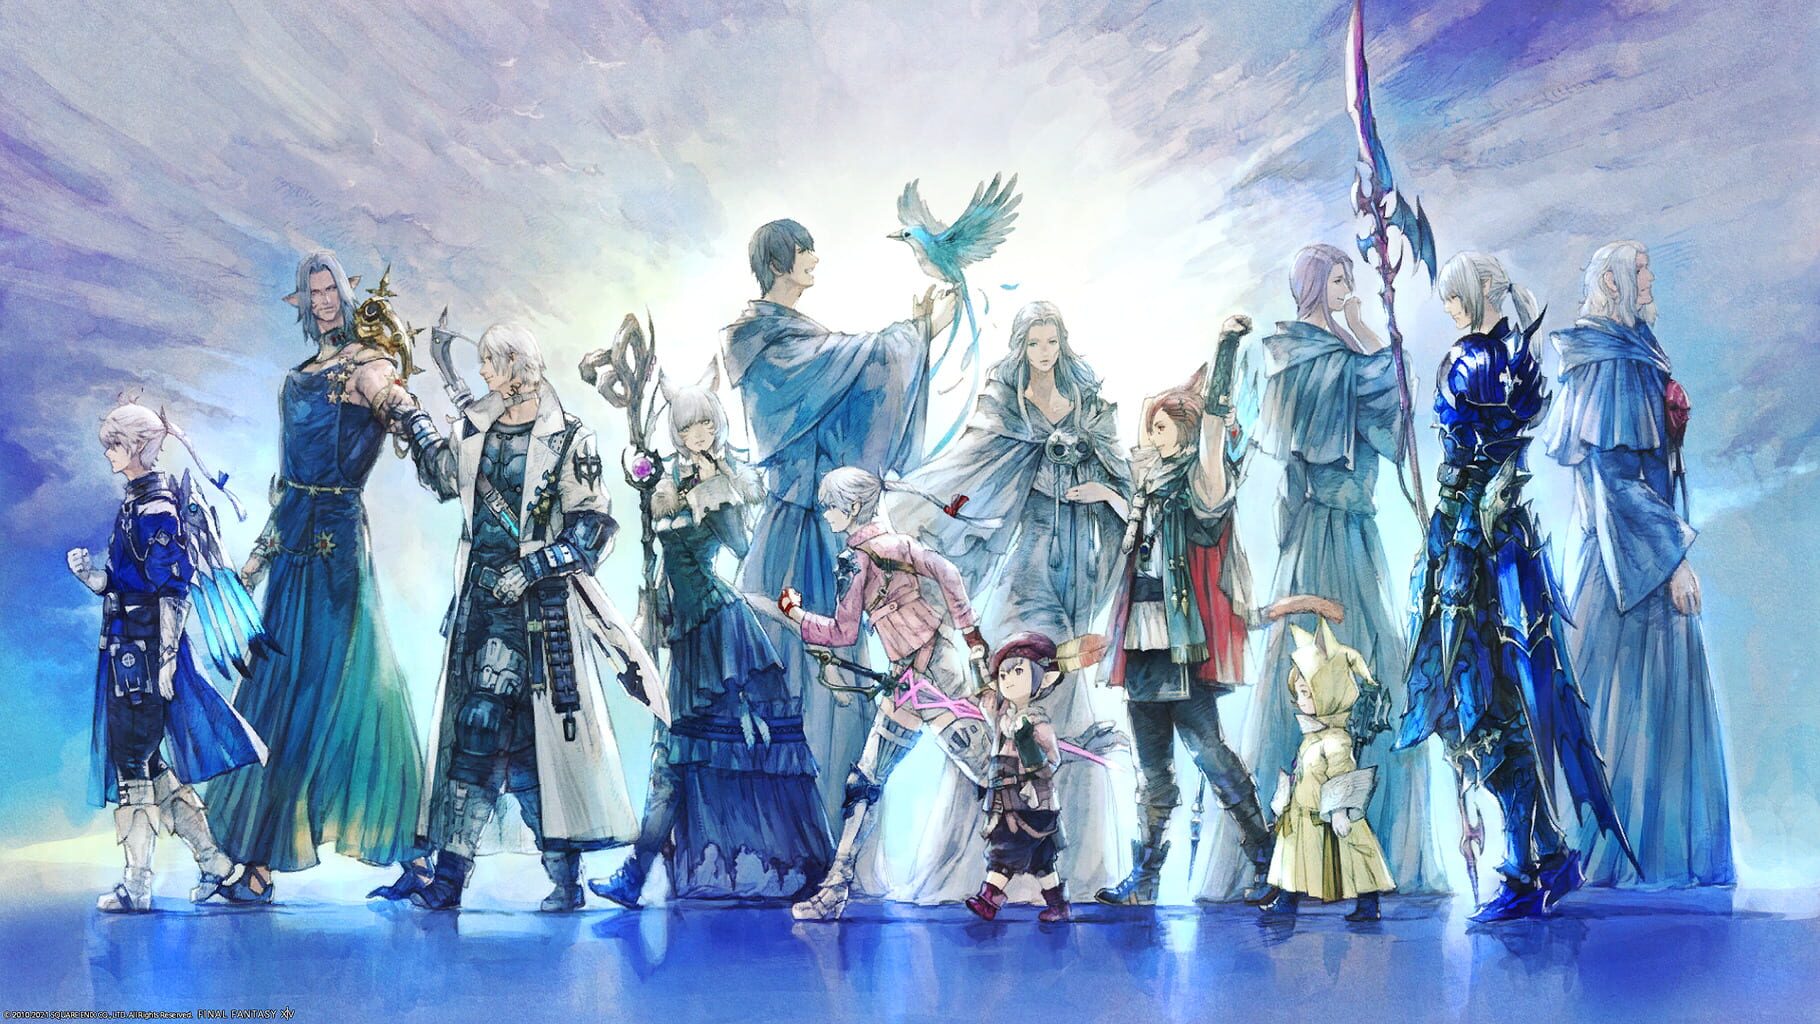 Arte - Final Fantasy XIV: Endwalker